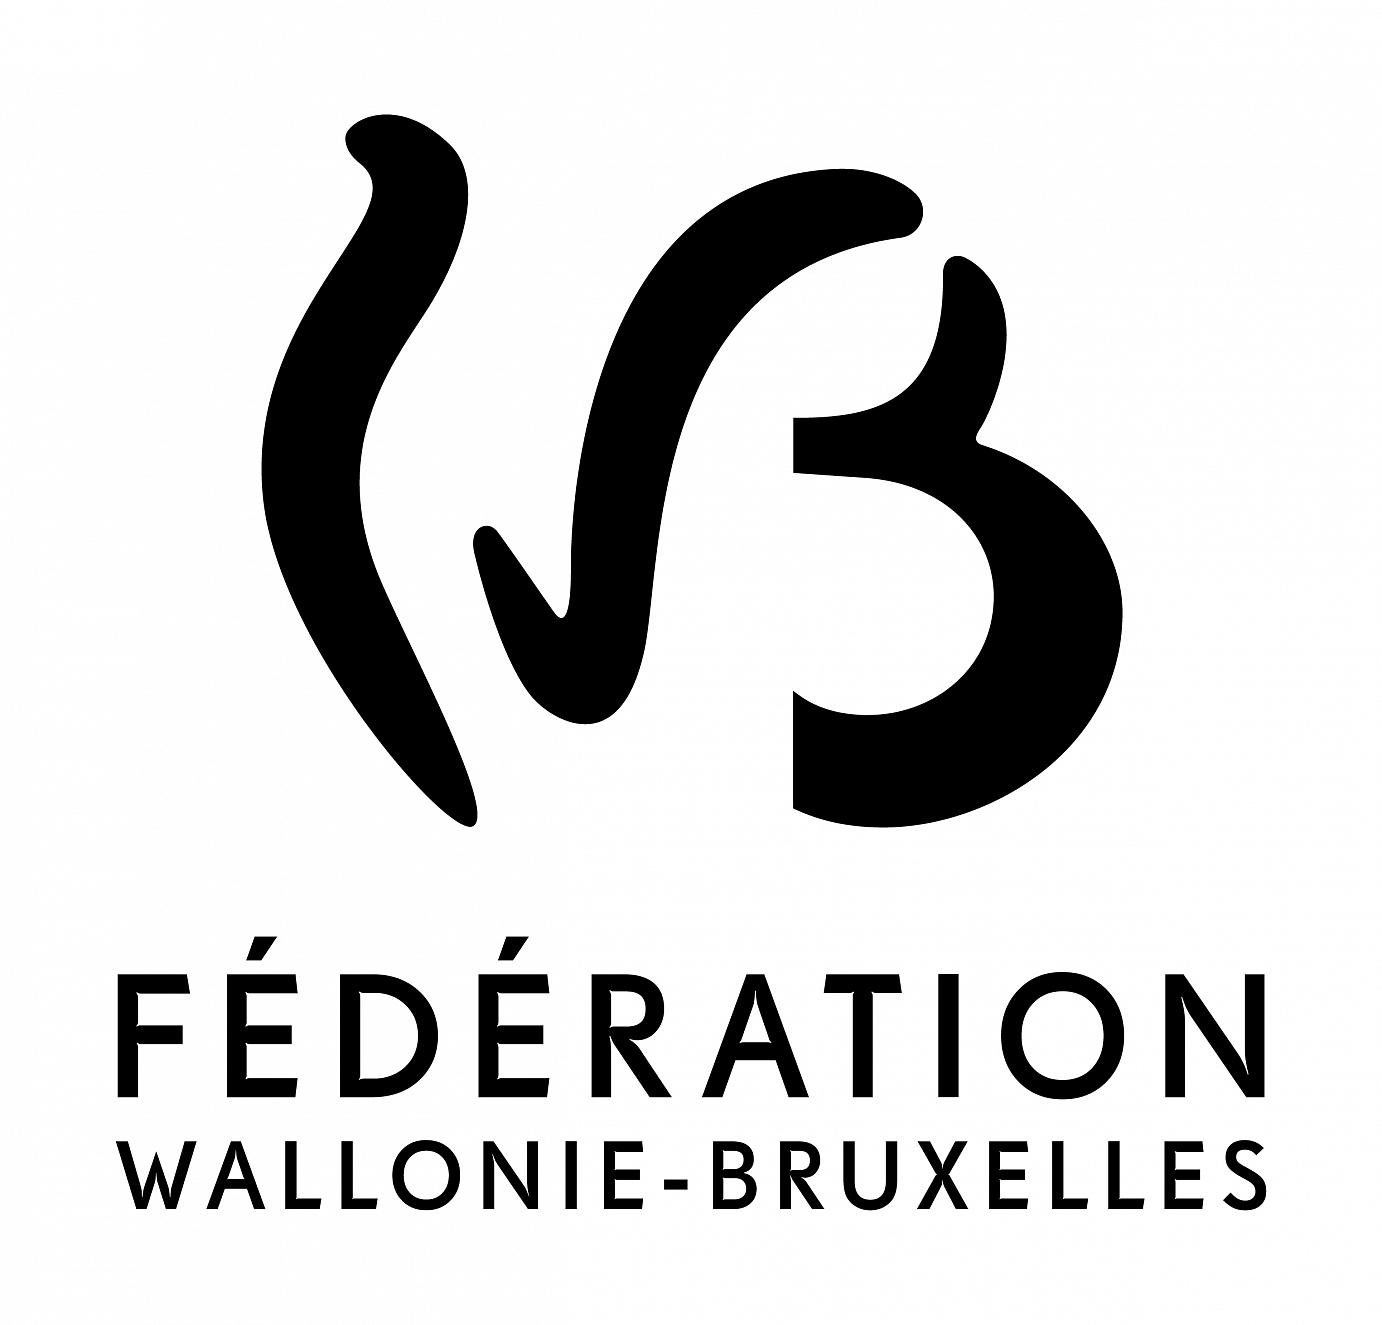 Formation culturelle : des bourses pour des stages professionnels en Fédération Wallonie-Bruxelles